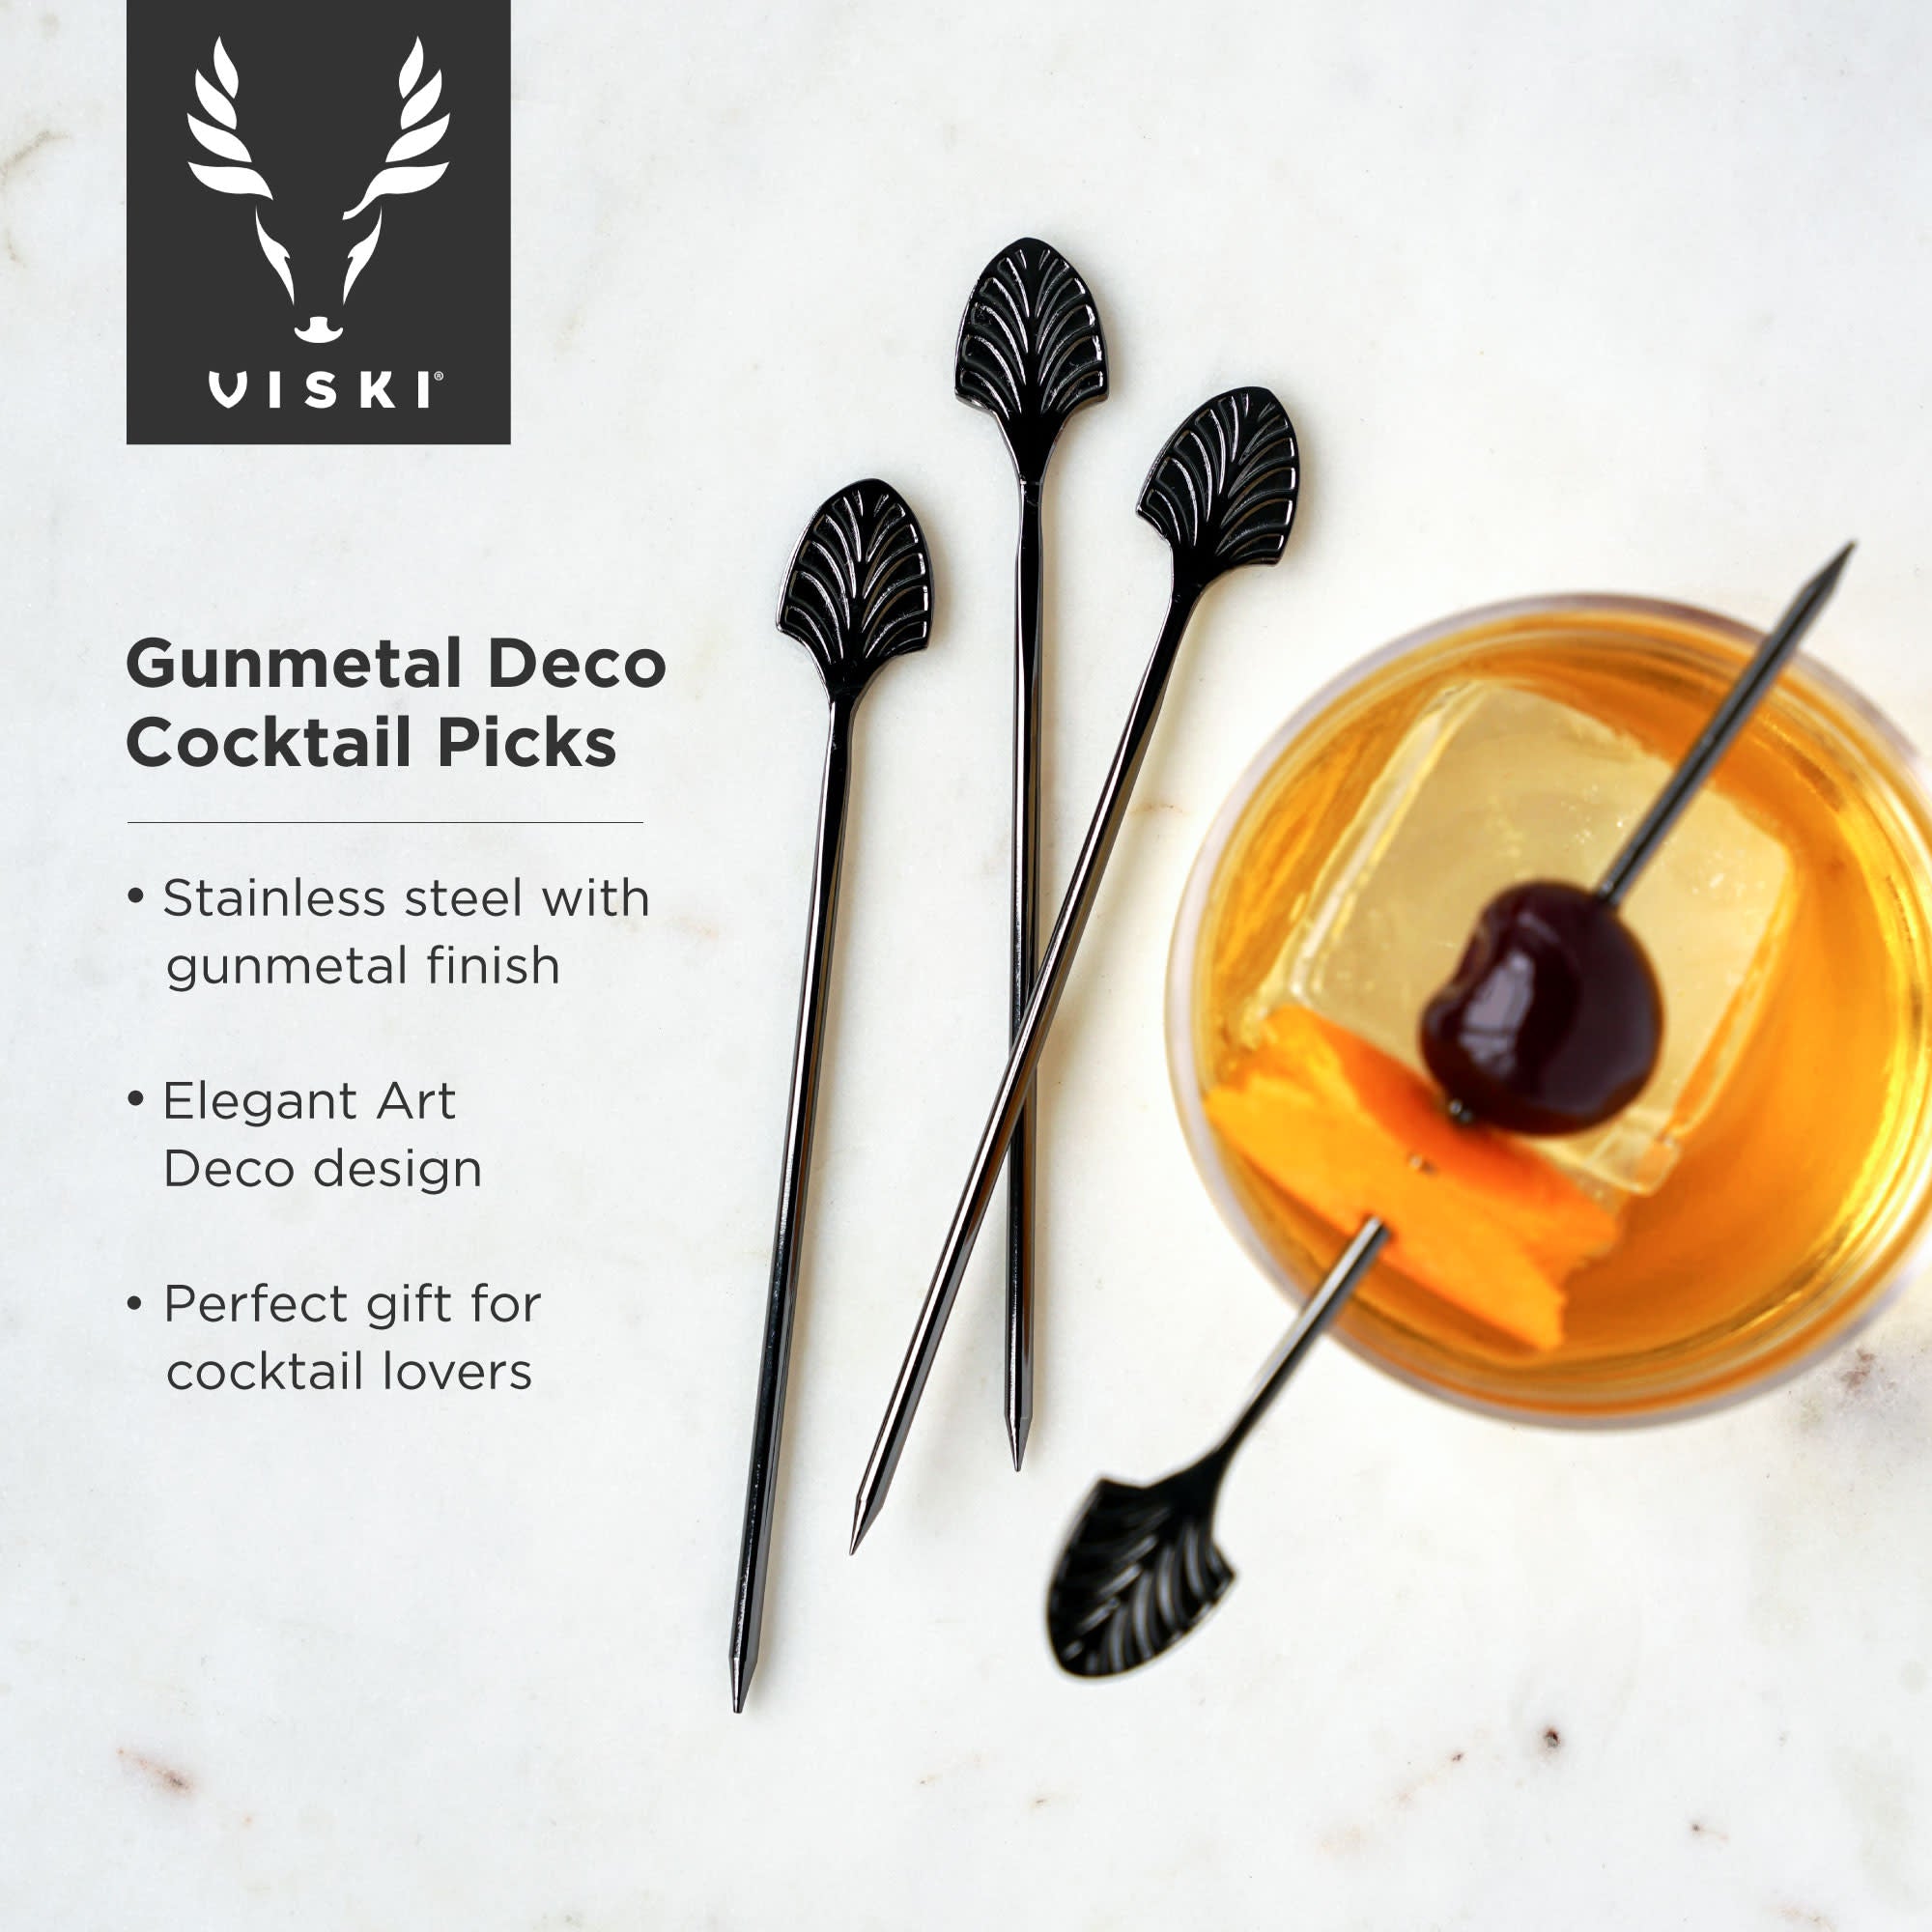 Gunmetal Deco Cocktail Picks by Viski® (9577)